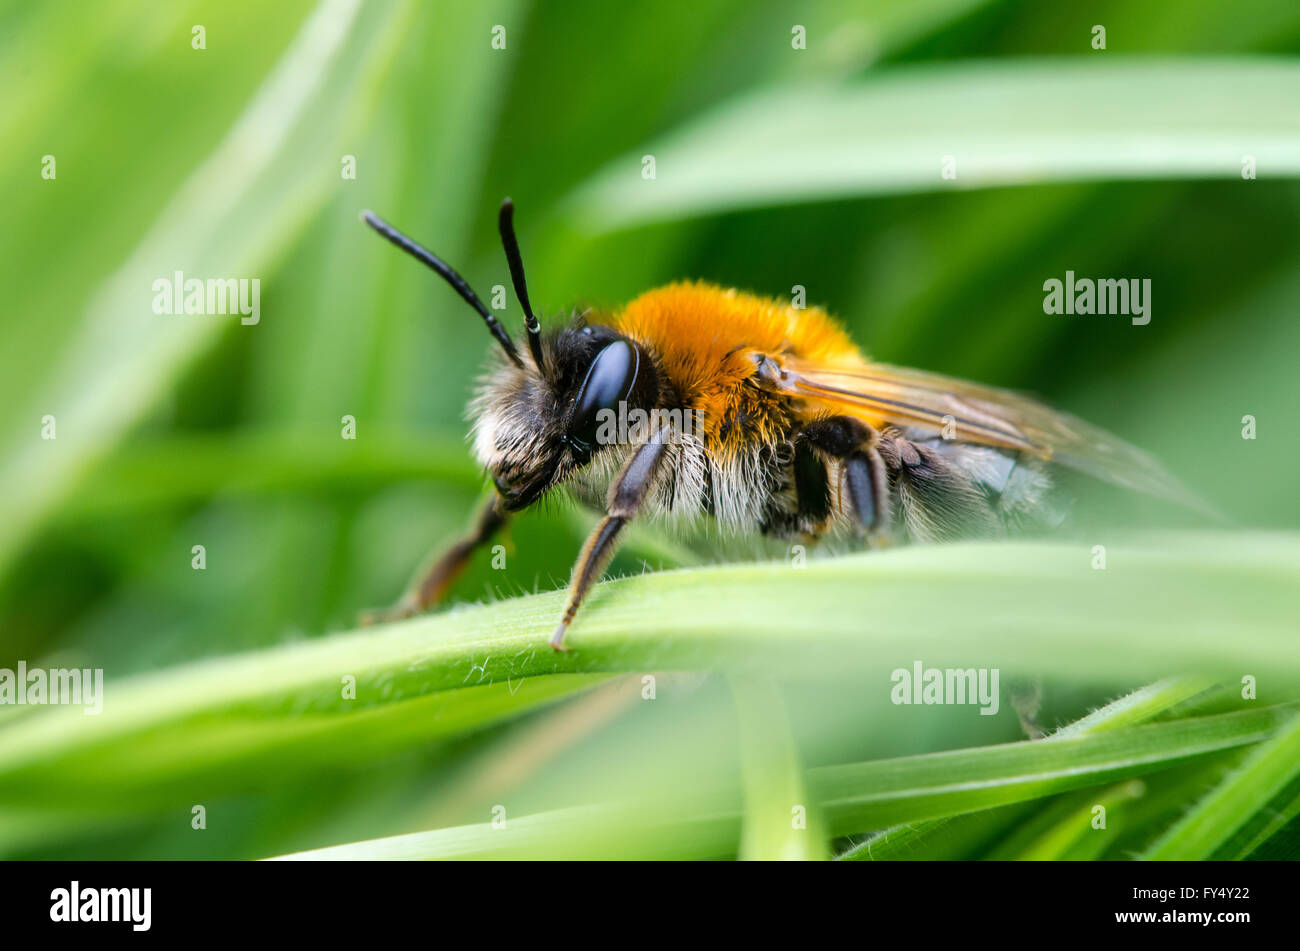 Andrena Nitida, weibliche Bergbau Biene. Eine einsame weibliche Biene im Profil, mit markanten Fuchs-rote Färbung des Thorax und Haare im Gesicht Stockfoto